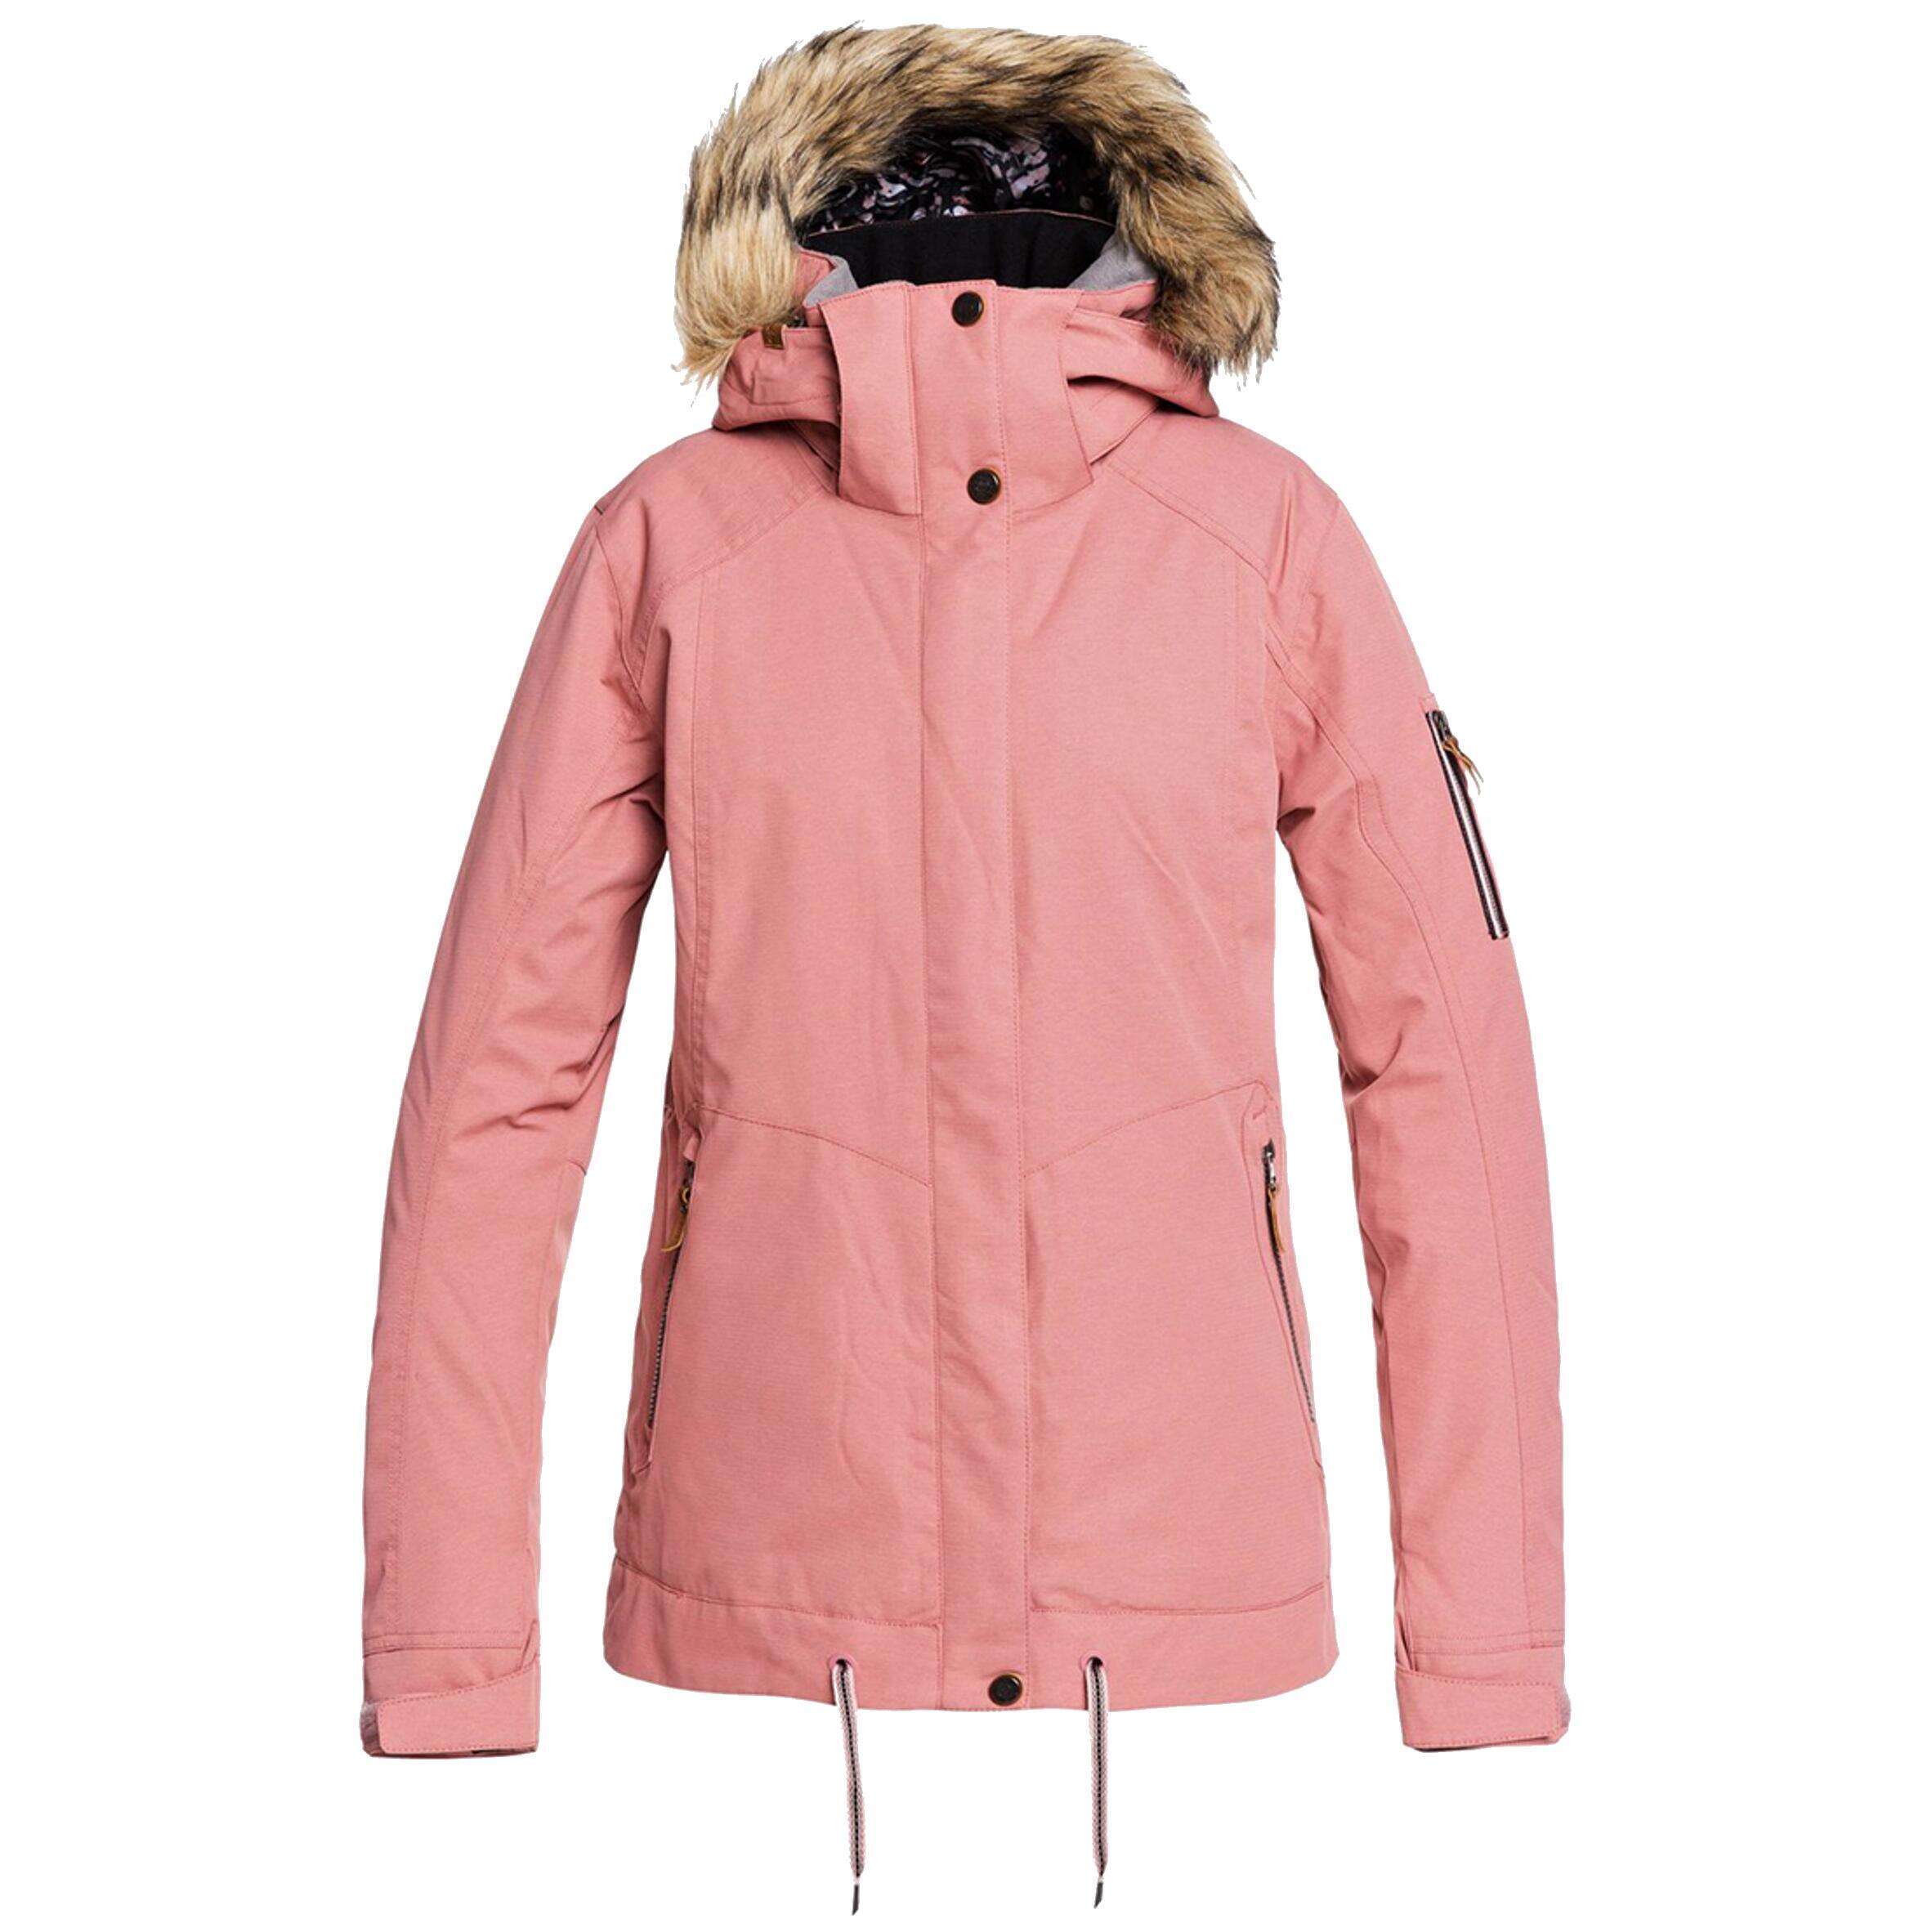 Roxy куртка розовая. Куртка Roxy женская DRYFLIGHT. Женская сноубордическая куртка Roxy Meade. Roxy куртка сноубордическая розовая. Декатлон куртка сноубордическая.